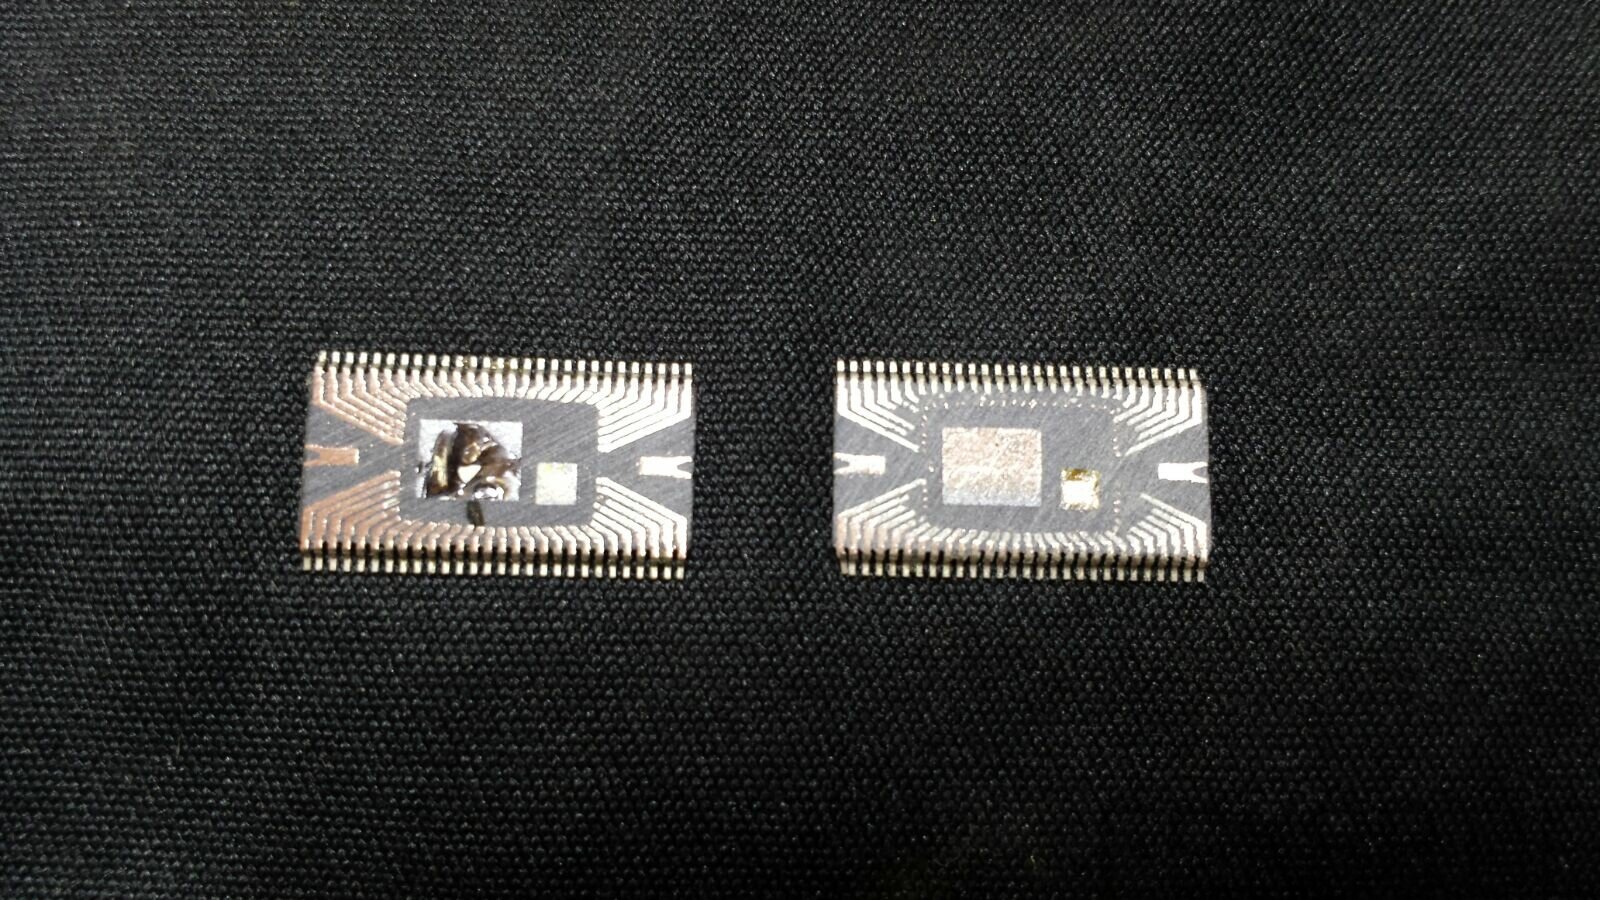 Hab mal zwei defekte DRV Chips aufgeschliffen.

Den linken DRV hat BruceLee zerstört, dabei ist das komplette Silizium Die geschmolzen. Der rechte ist einen normalen Tod gestorben...